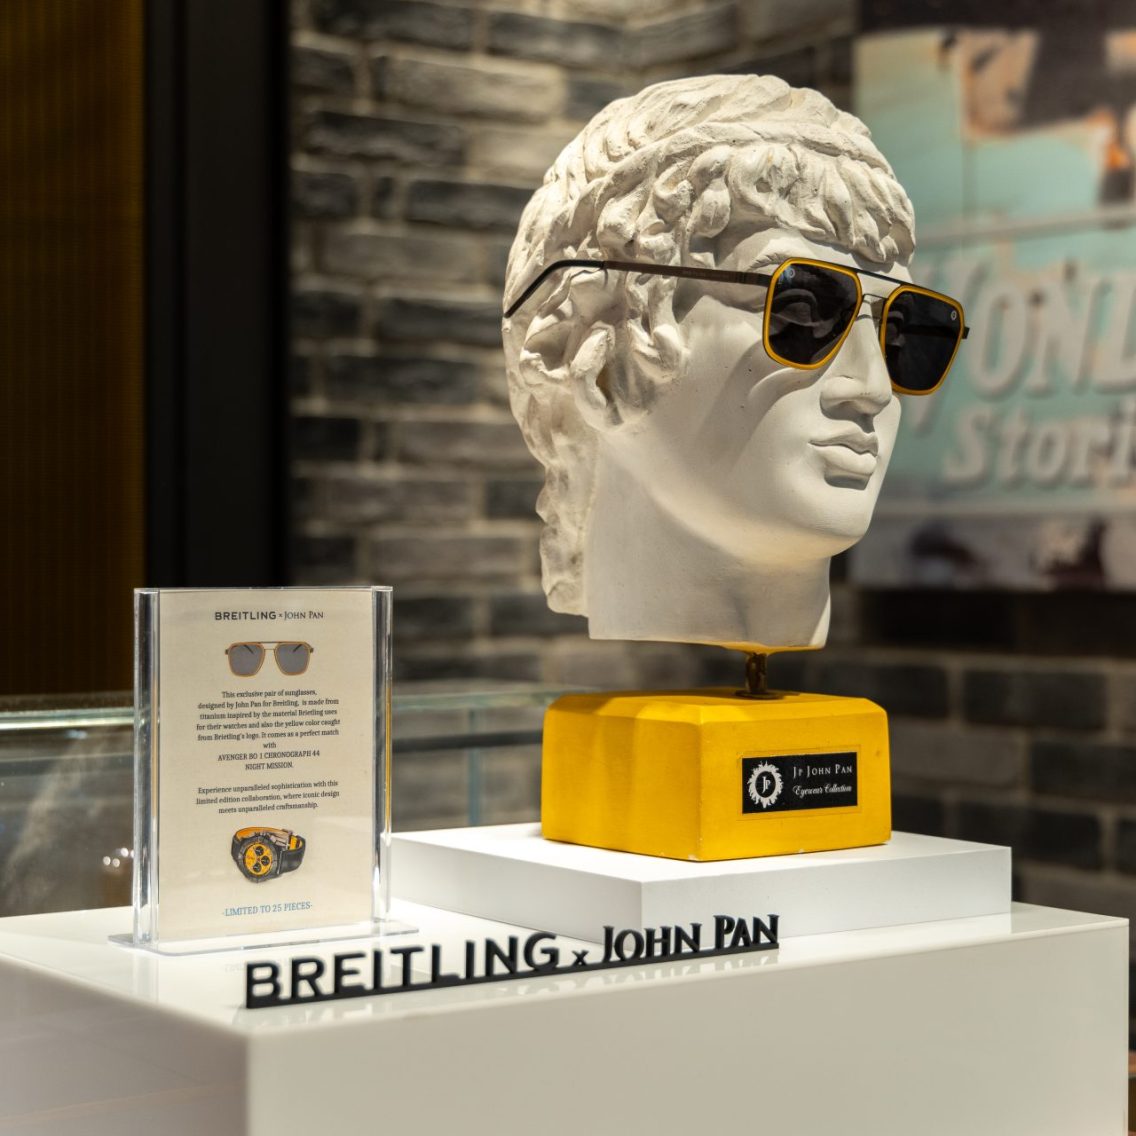 Η Breitling παρουσιάζει τον σχεδιαστή γυαλιών ηλίου John Pan